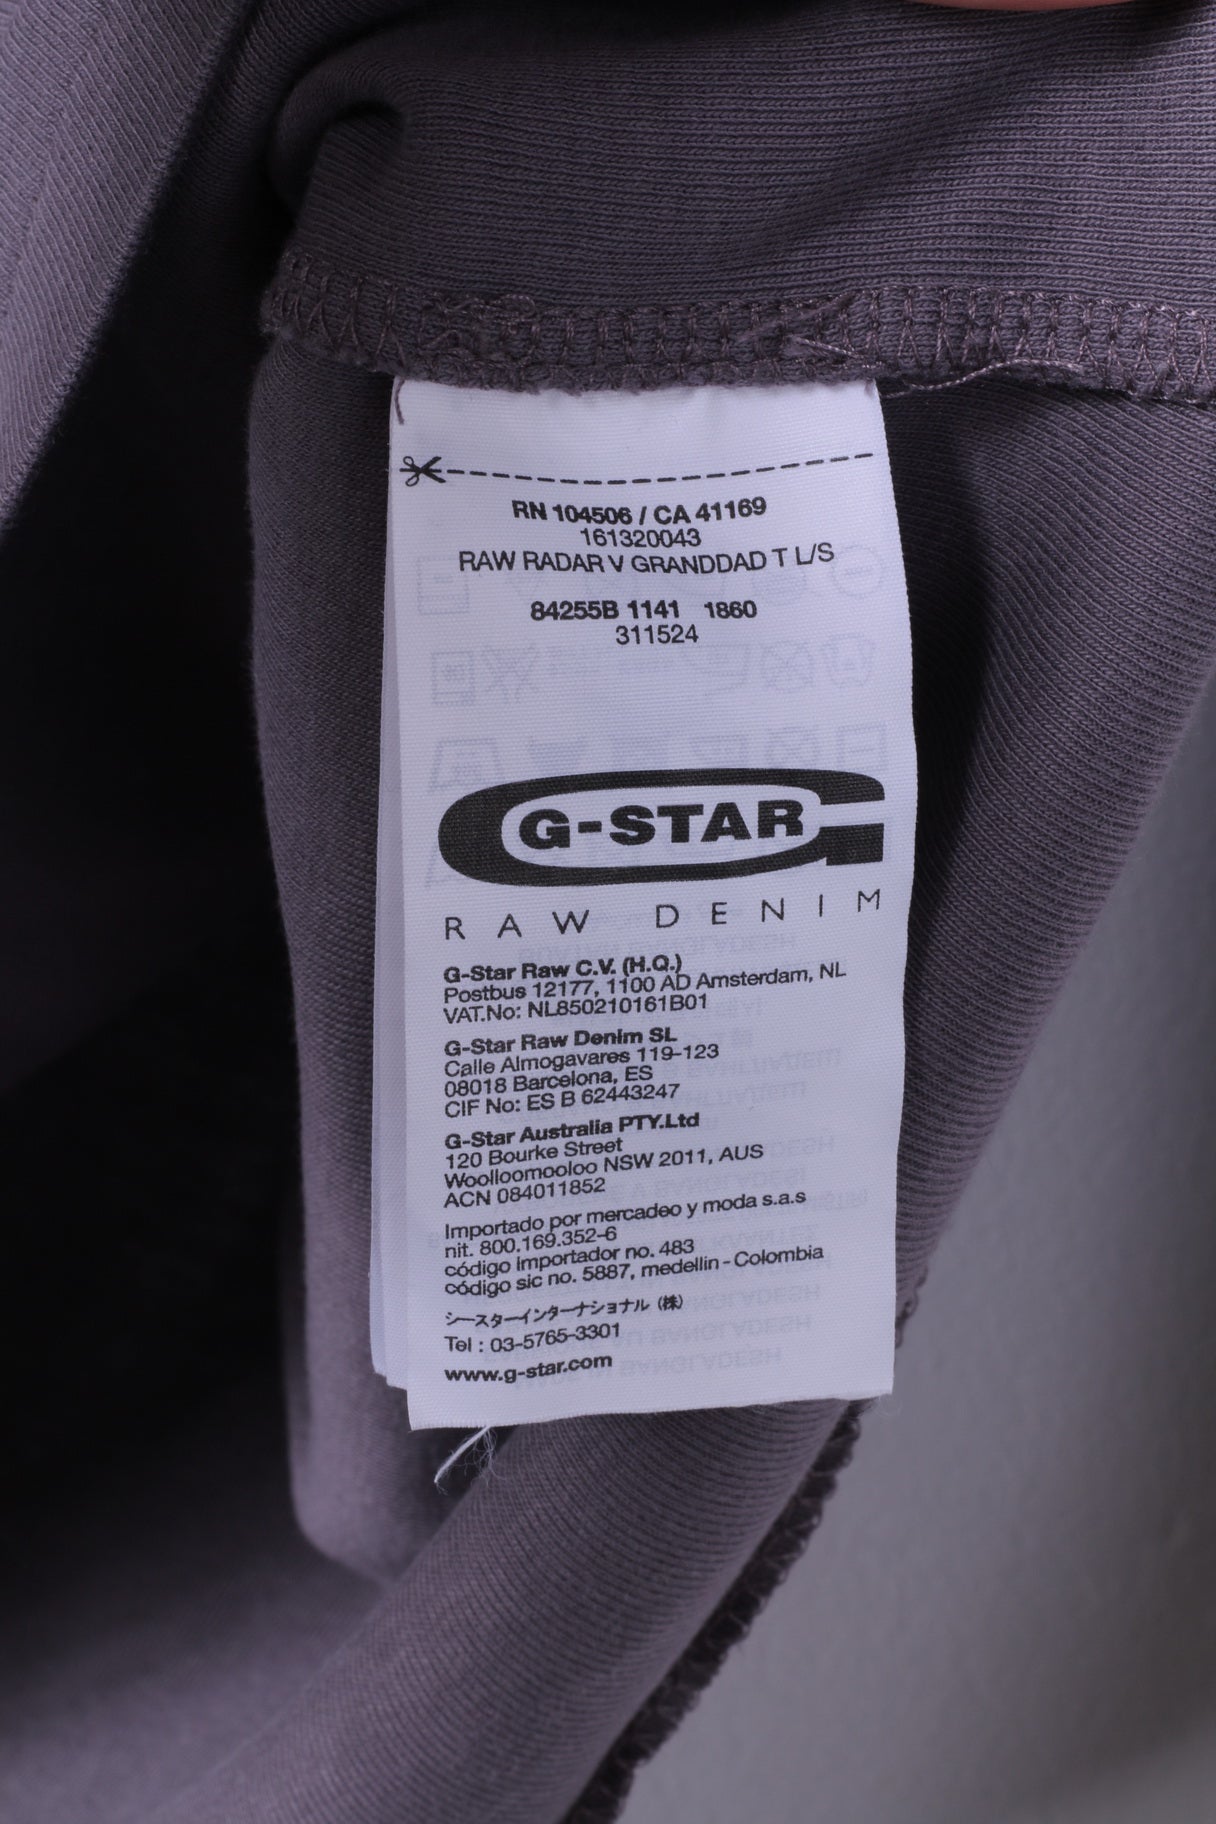 G-Star Raw Mens XL Long Sleeved Shirt Grey Stretch Cotton Radar Granddad Top